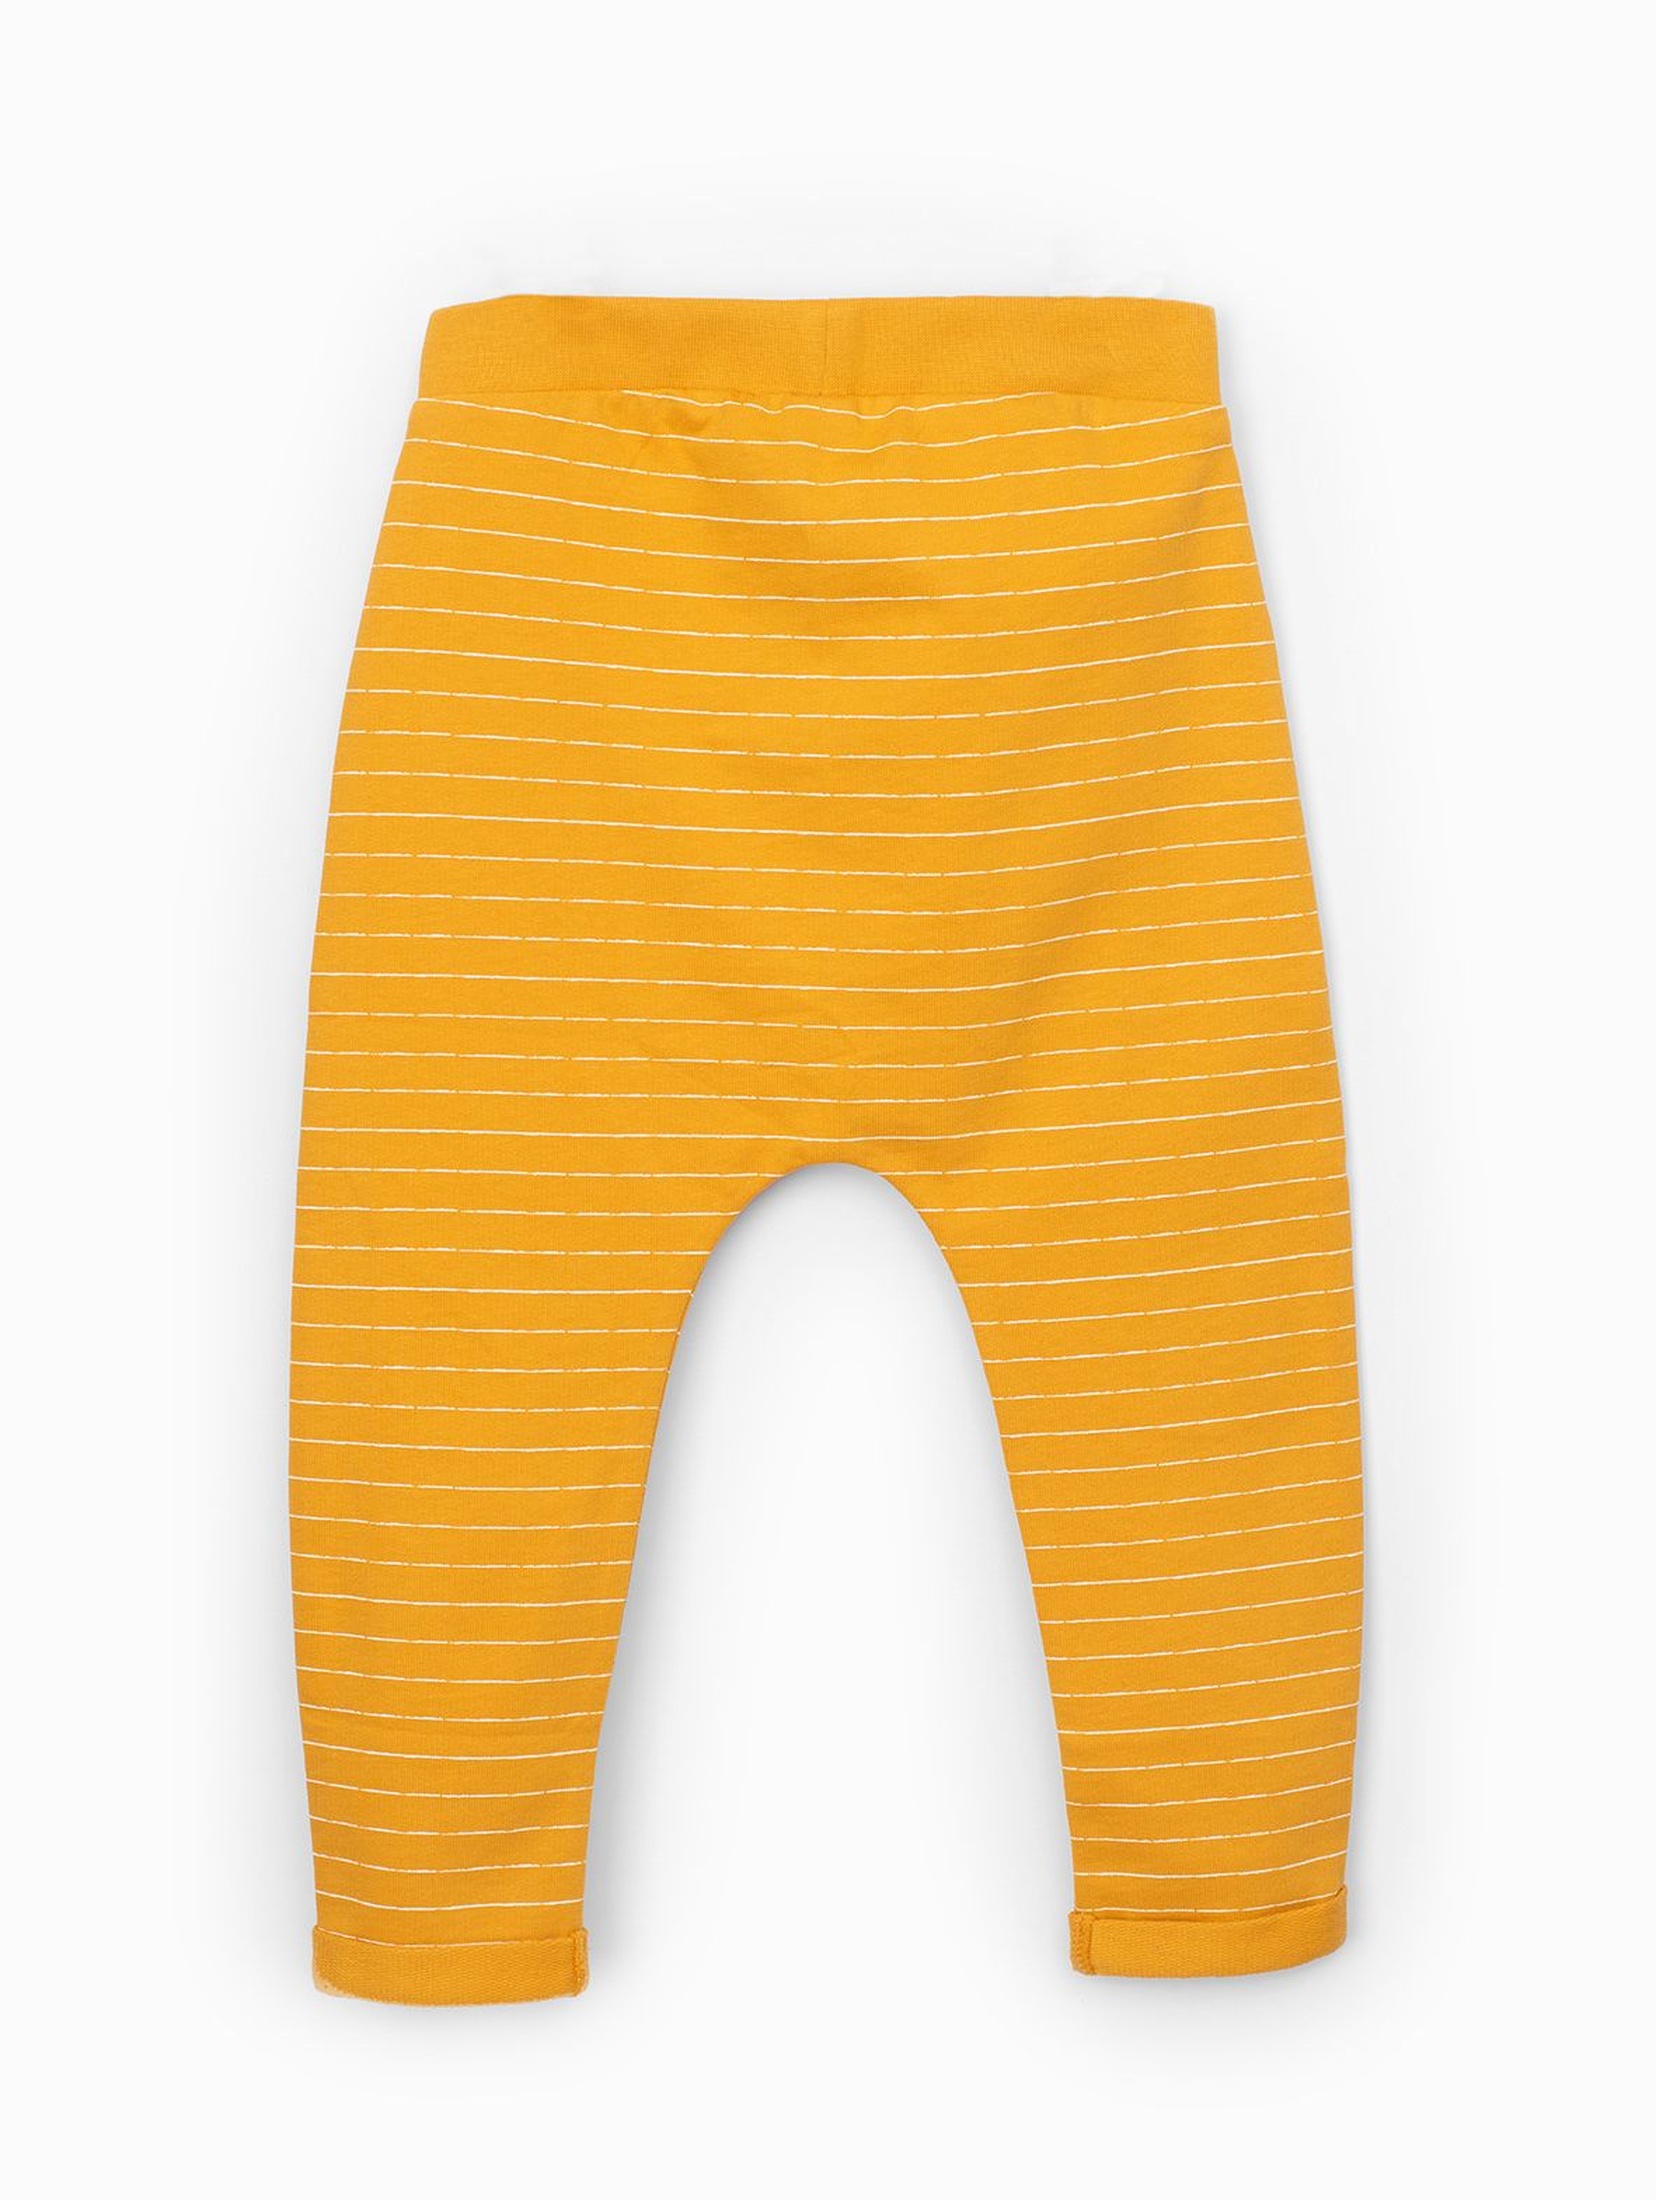 Żółte spodnie dresowe dla niemowlaka - ozdobne łaty